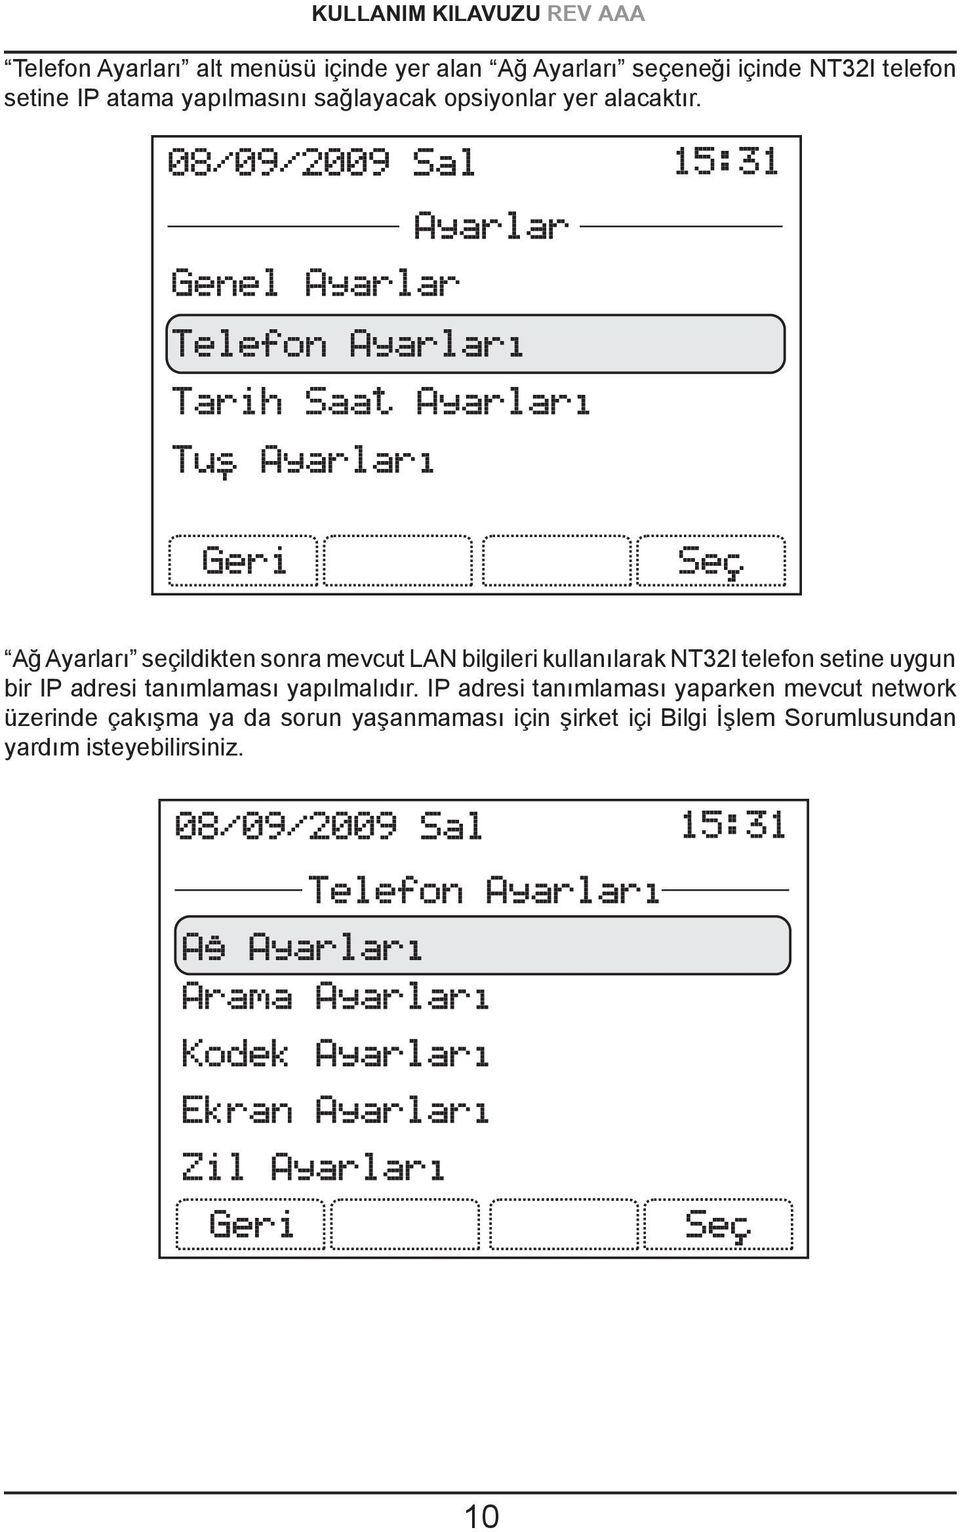 Ağ Ayarları seçildikten sonra mevcut LAN bilgileri kullanılarak NT32I telefon setine uygun bir IP adresi